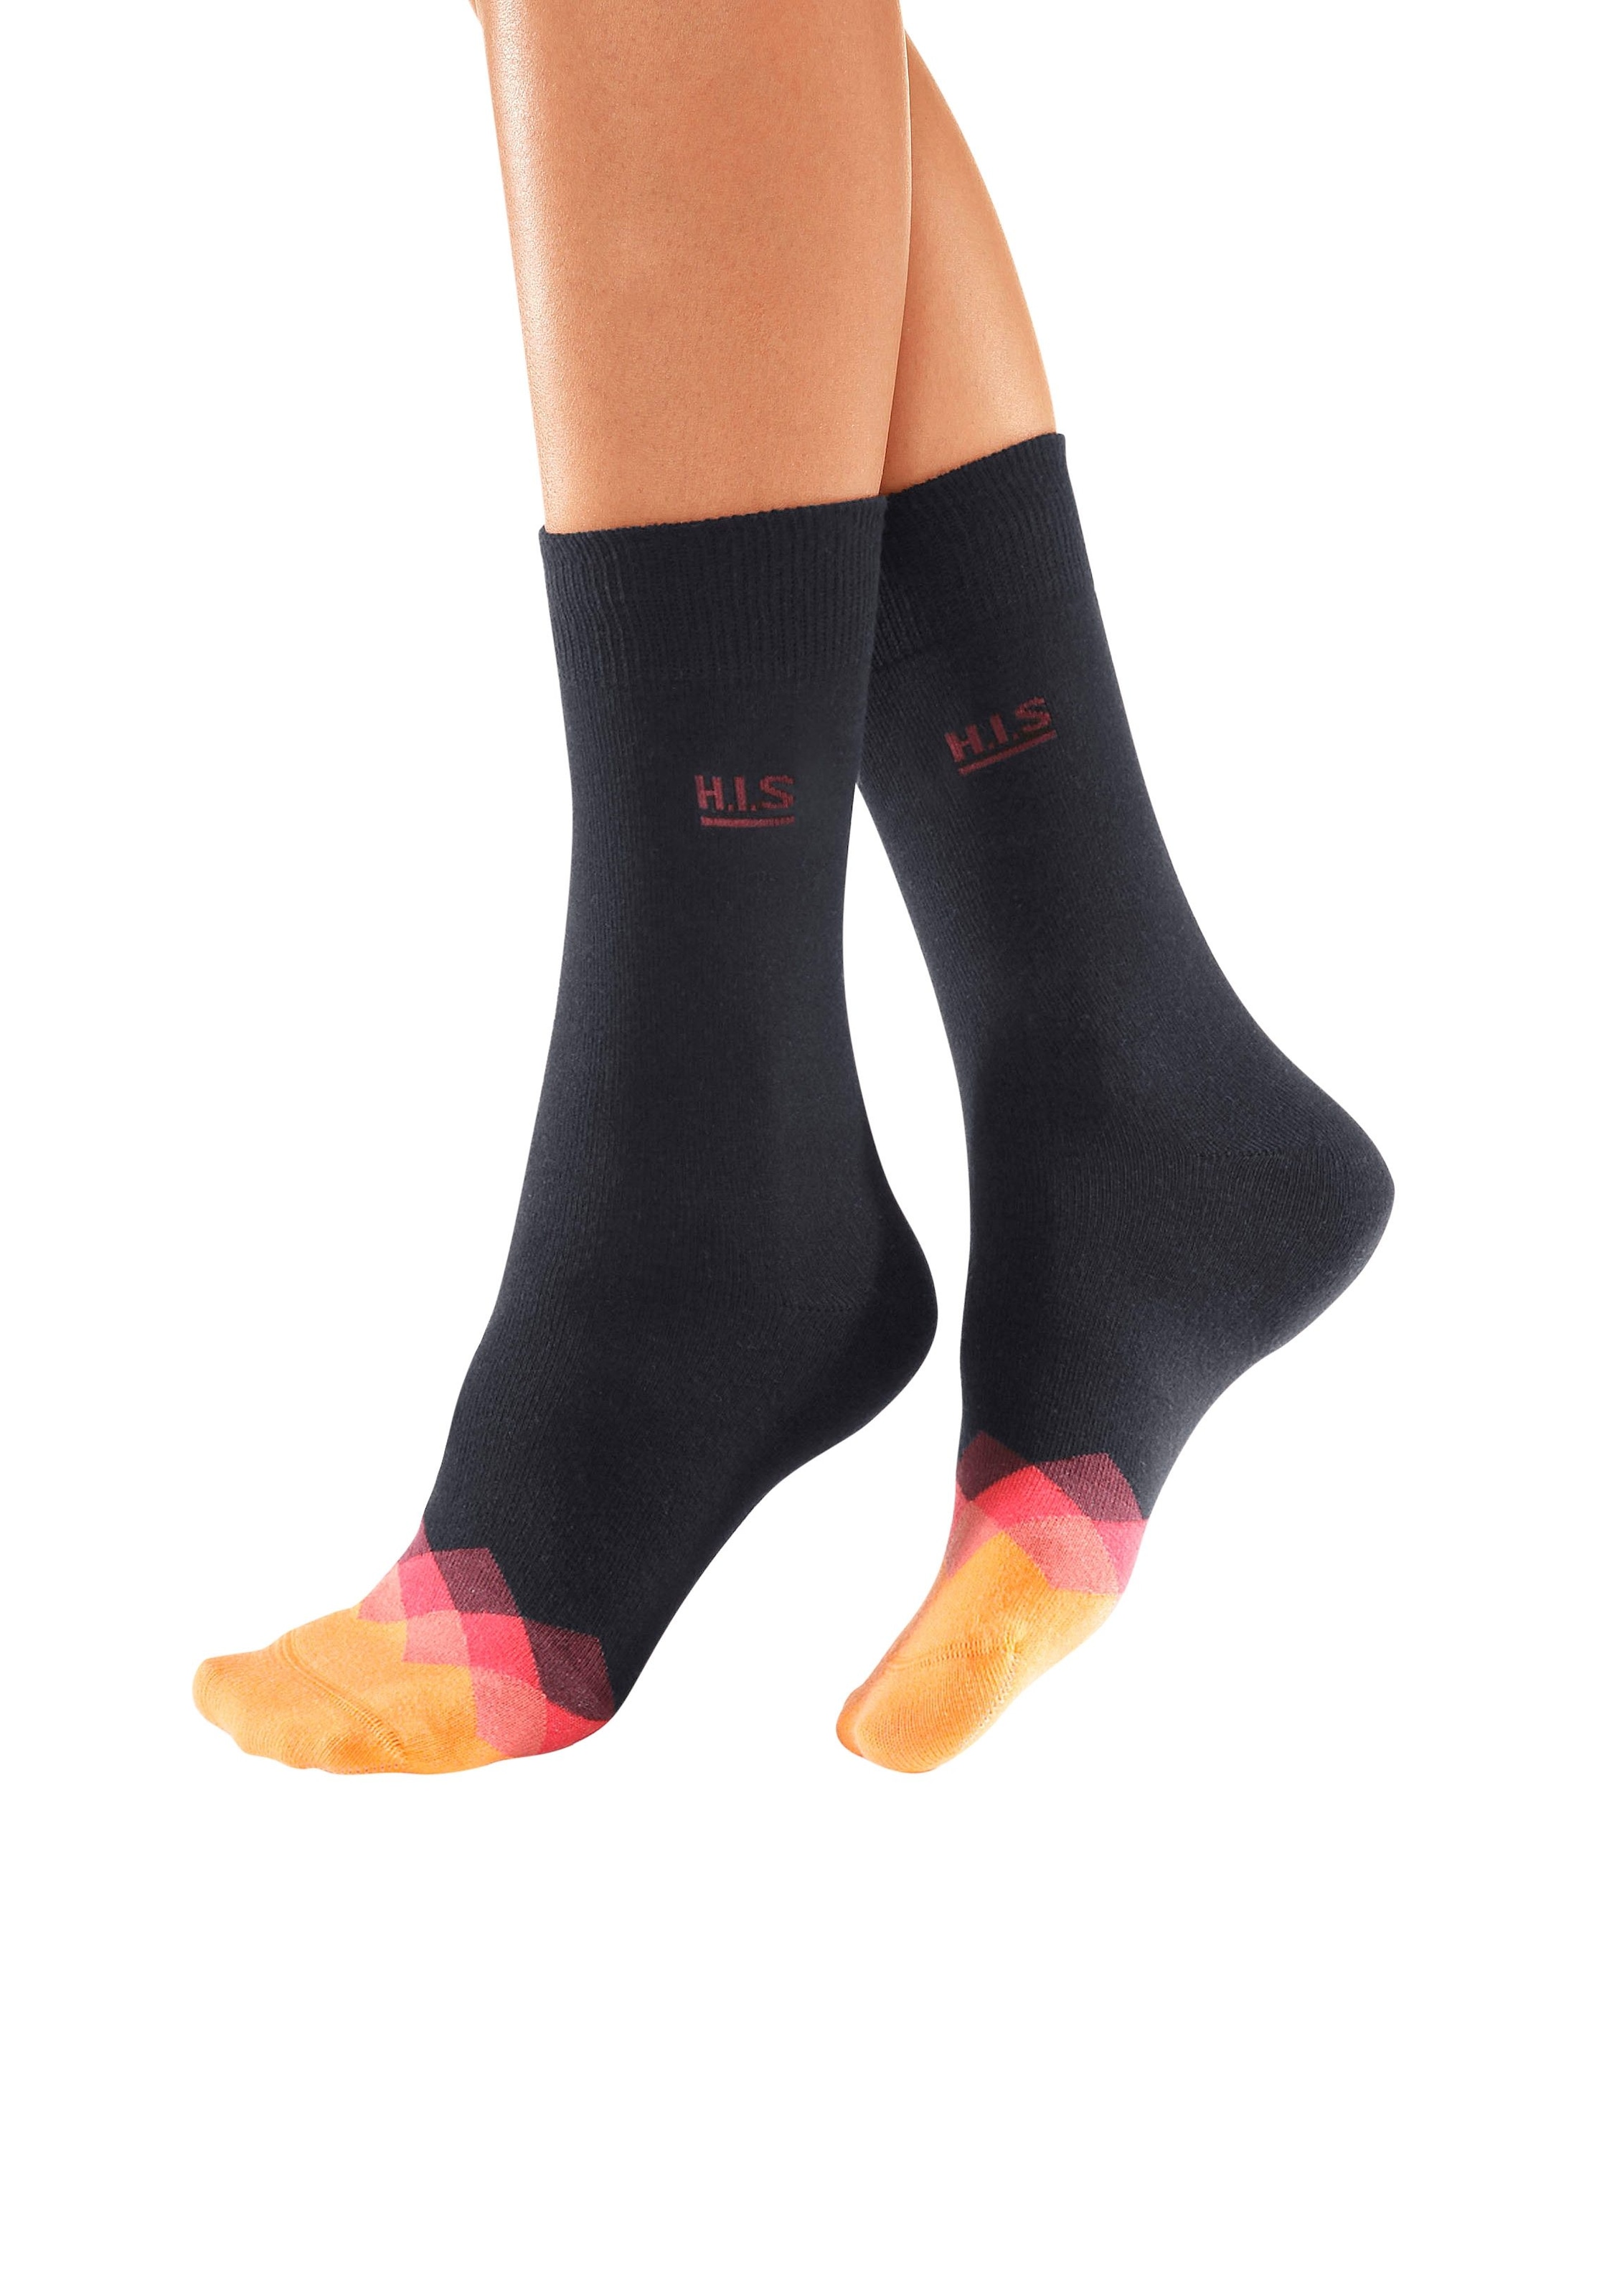 Farbmuster an der Paar) Socken | Spitze BAUR (7 mit tollen H.I.S